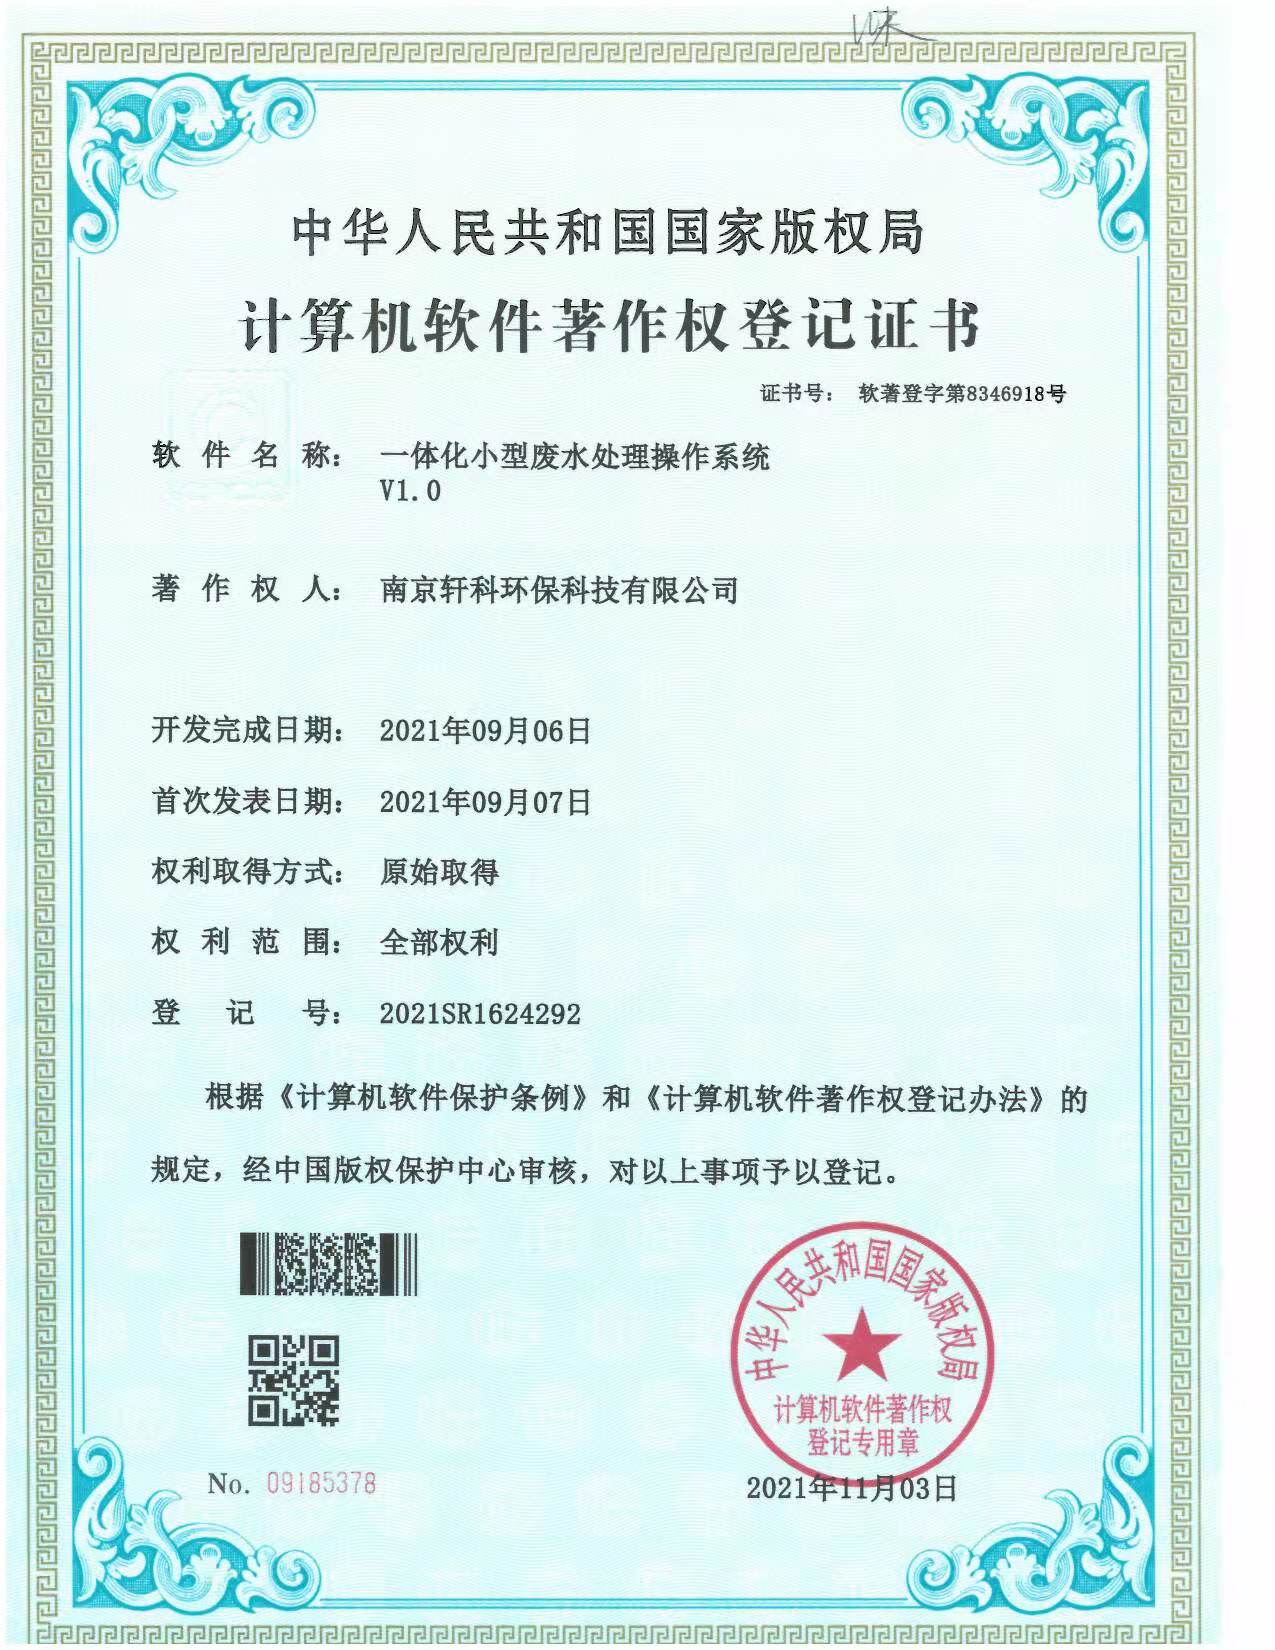 南京小型一体化废水处理系统软件著作权证书